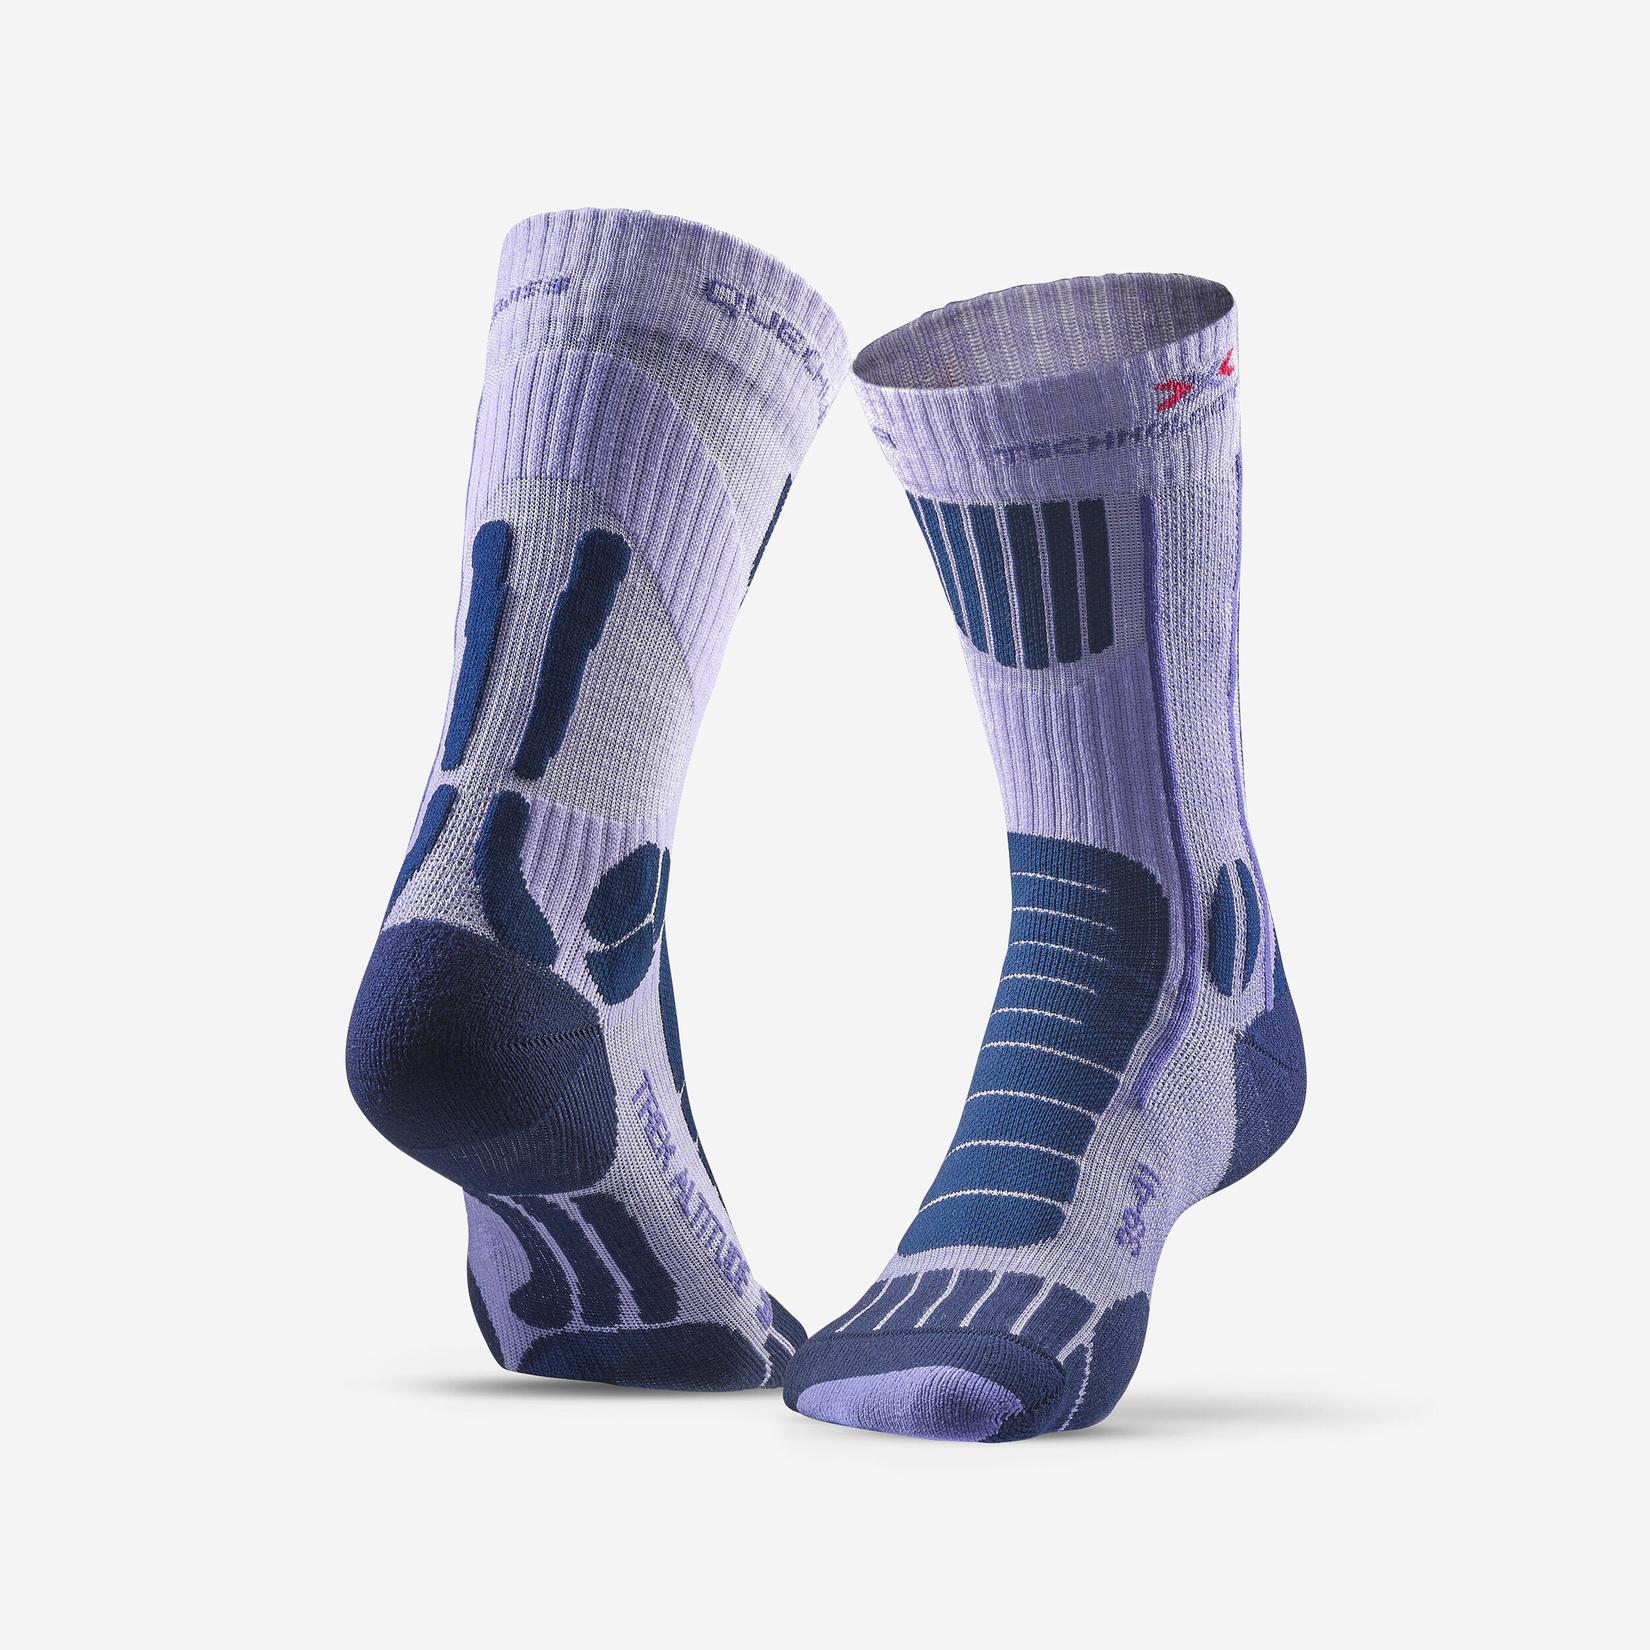 Ponožky Trek Altitude fialové 1 pár v akcii za 22€ v Decathlon